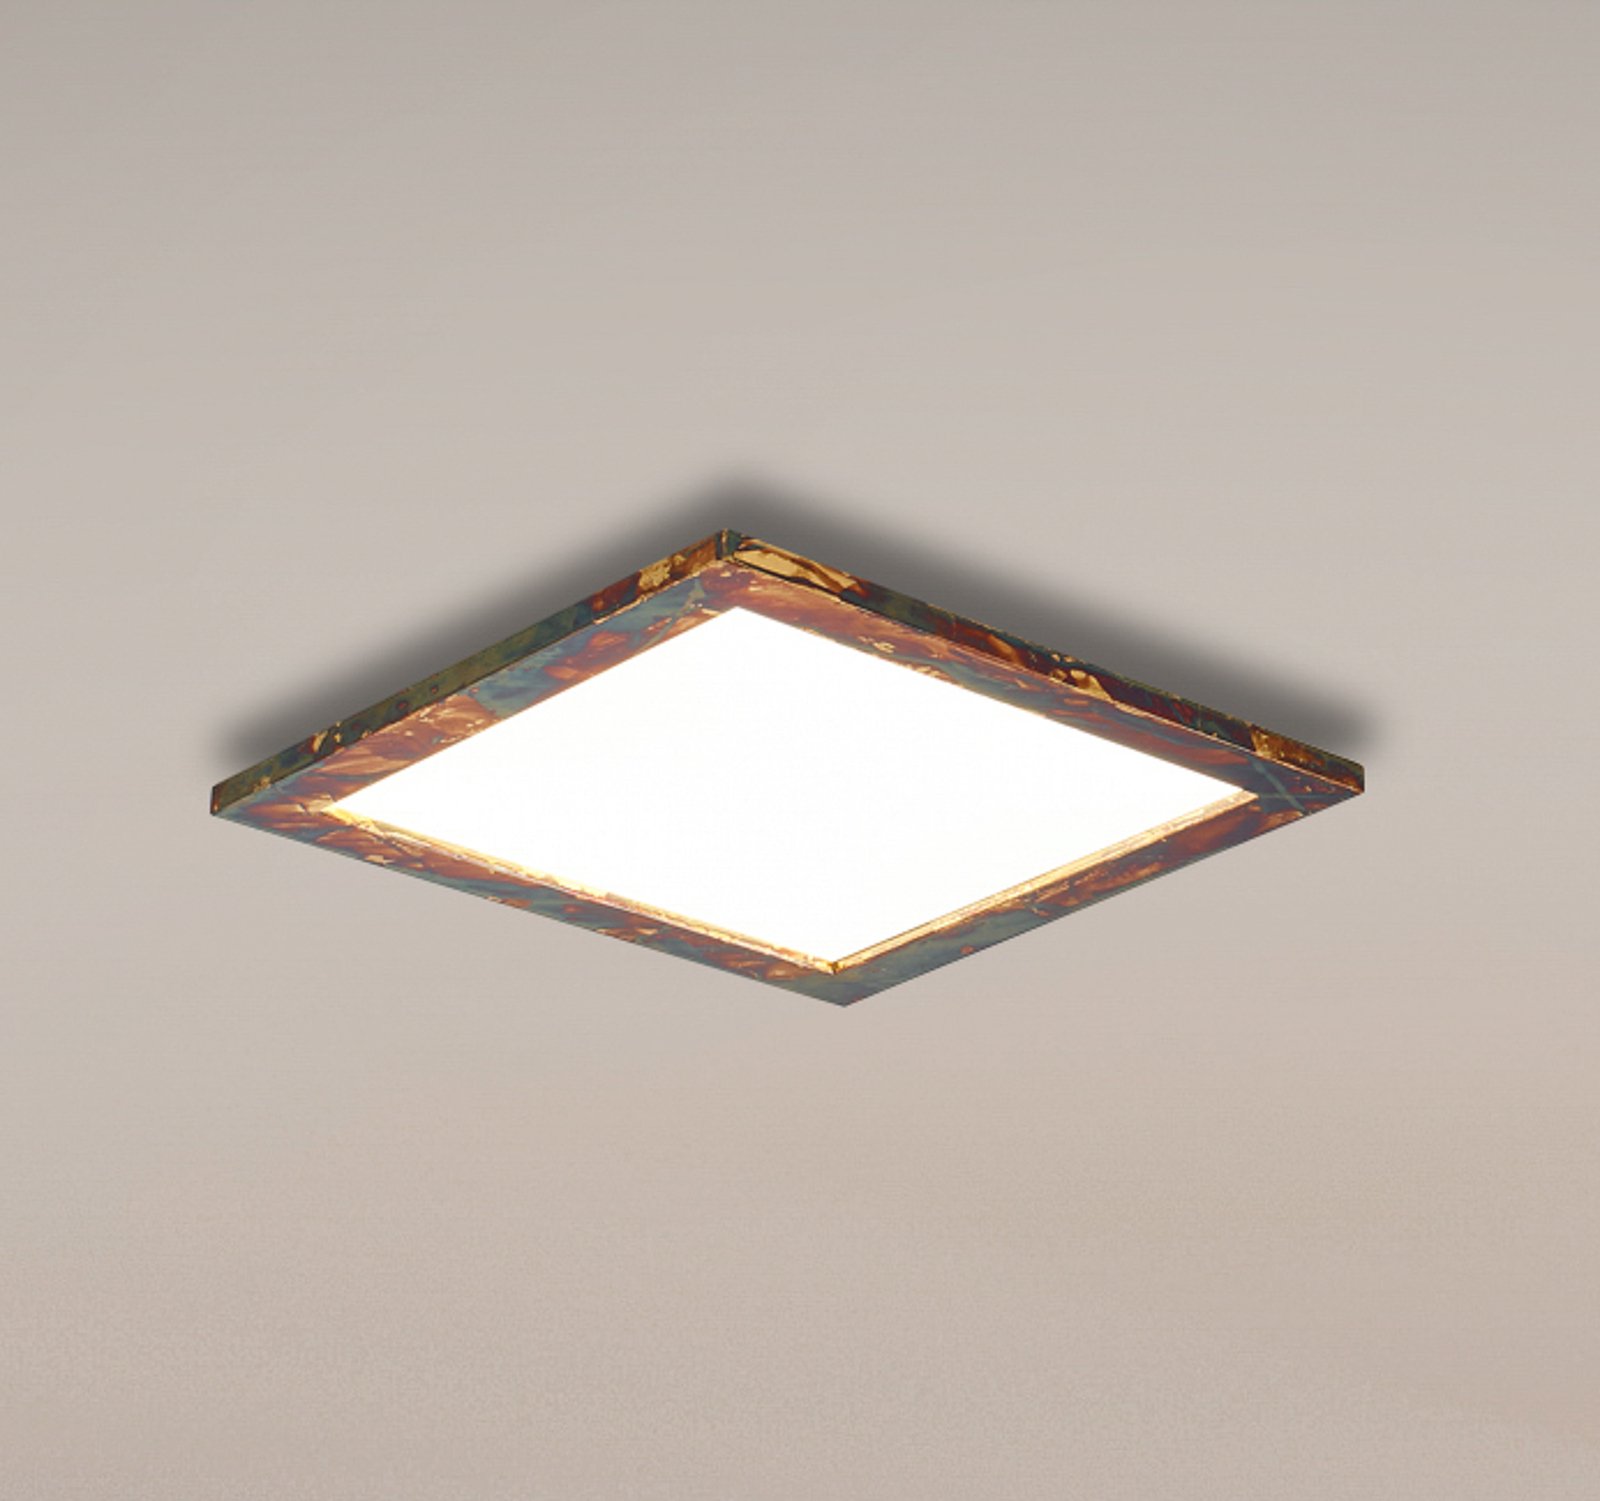 Painel LED Quitani Aurinor, dourado, 45 cm